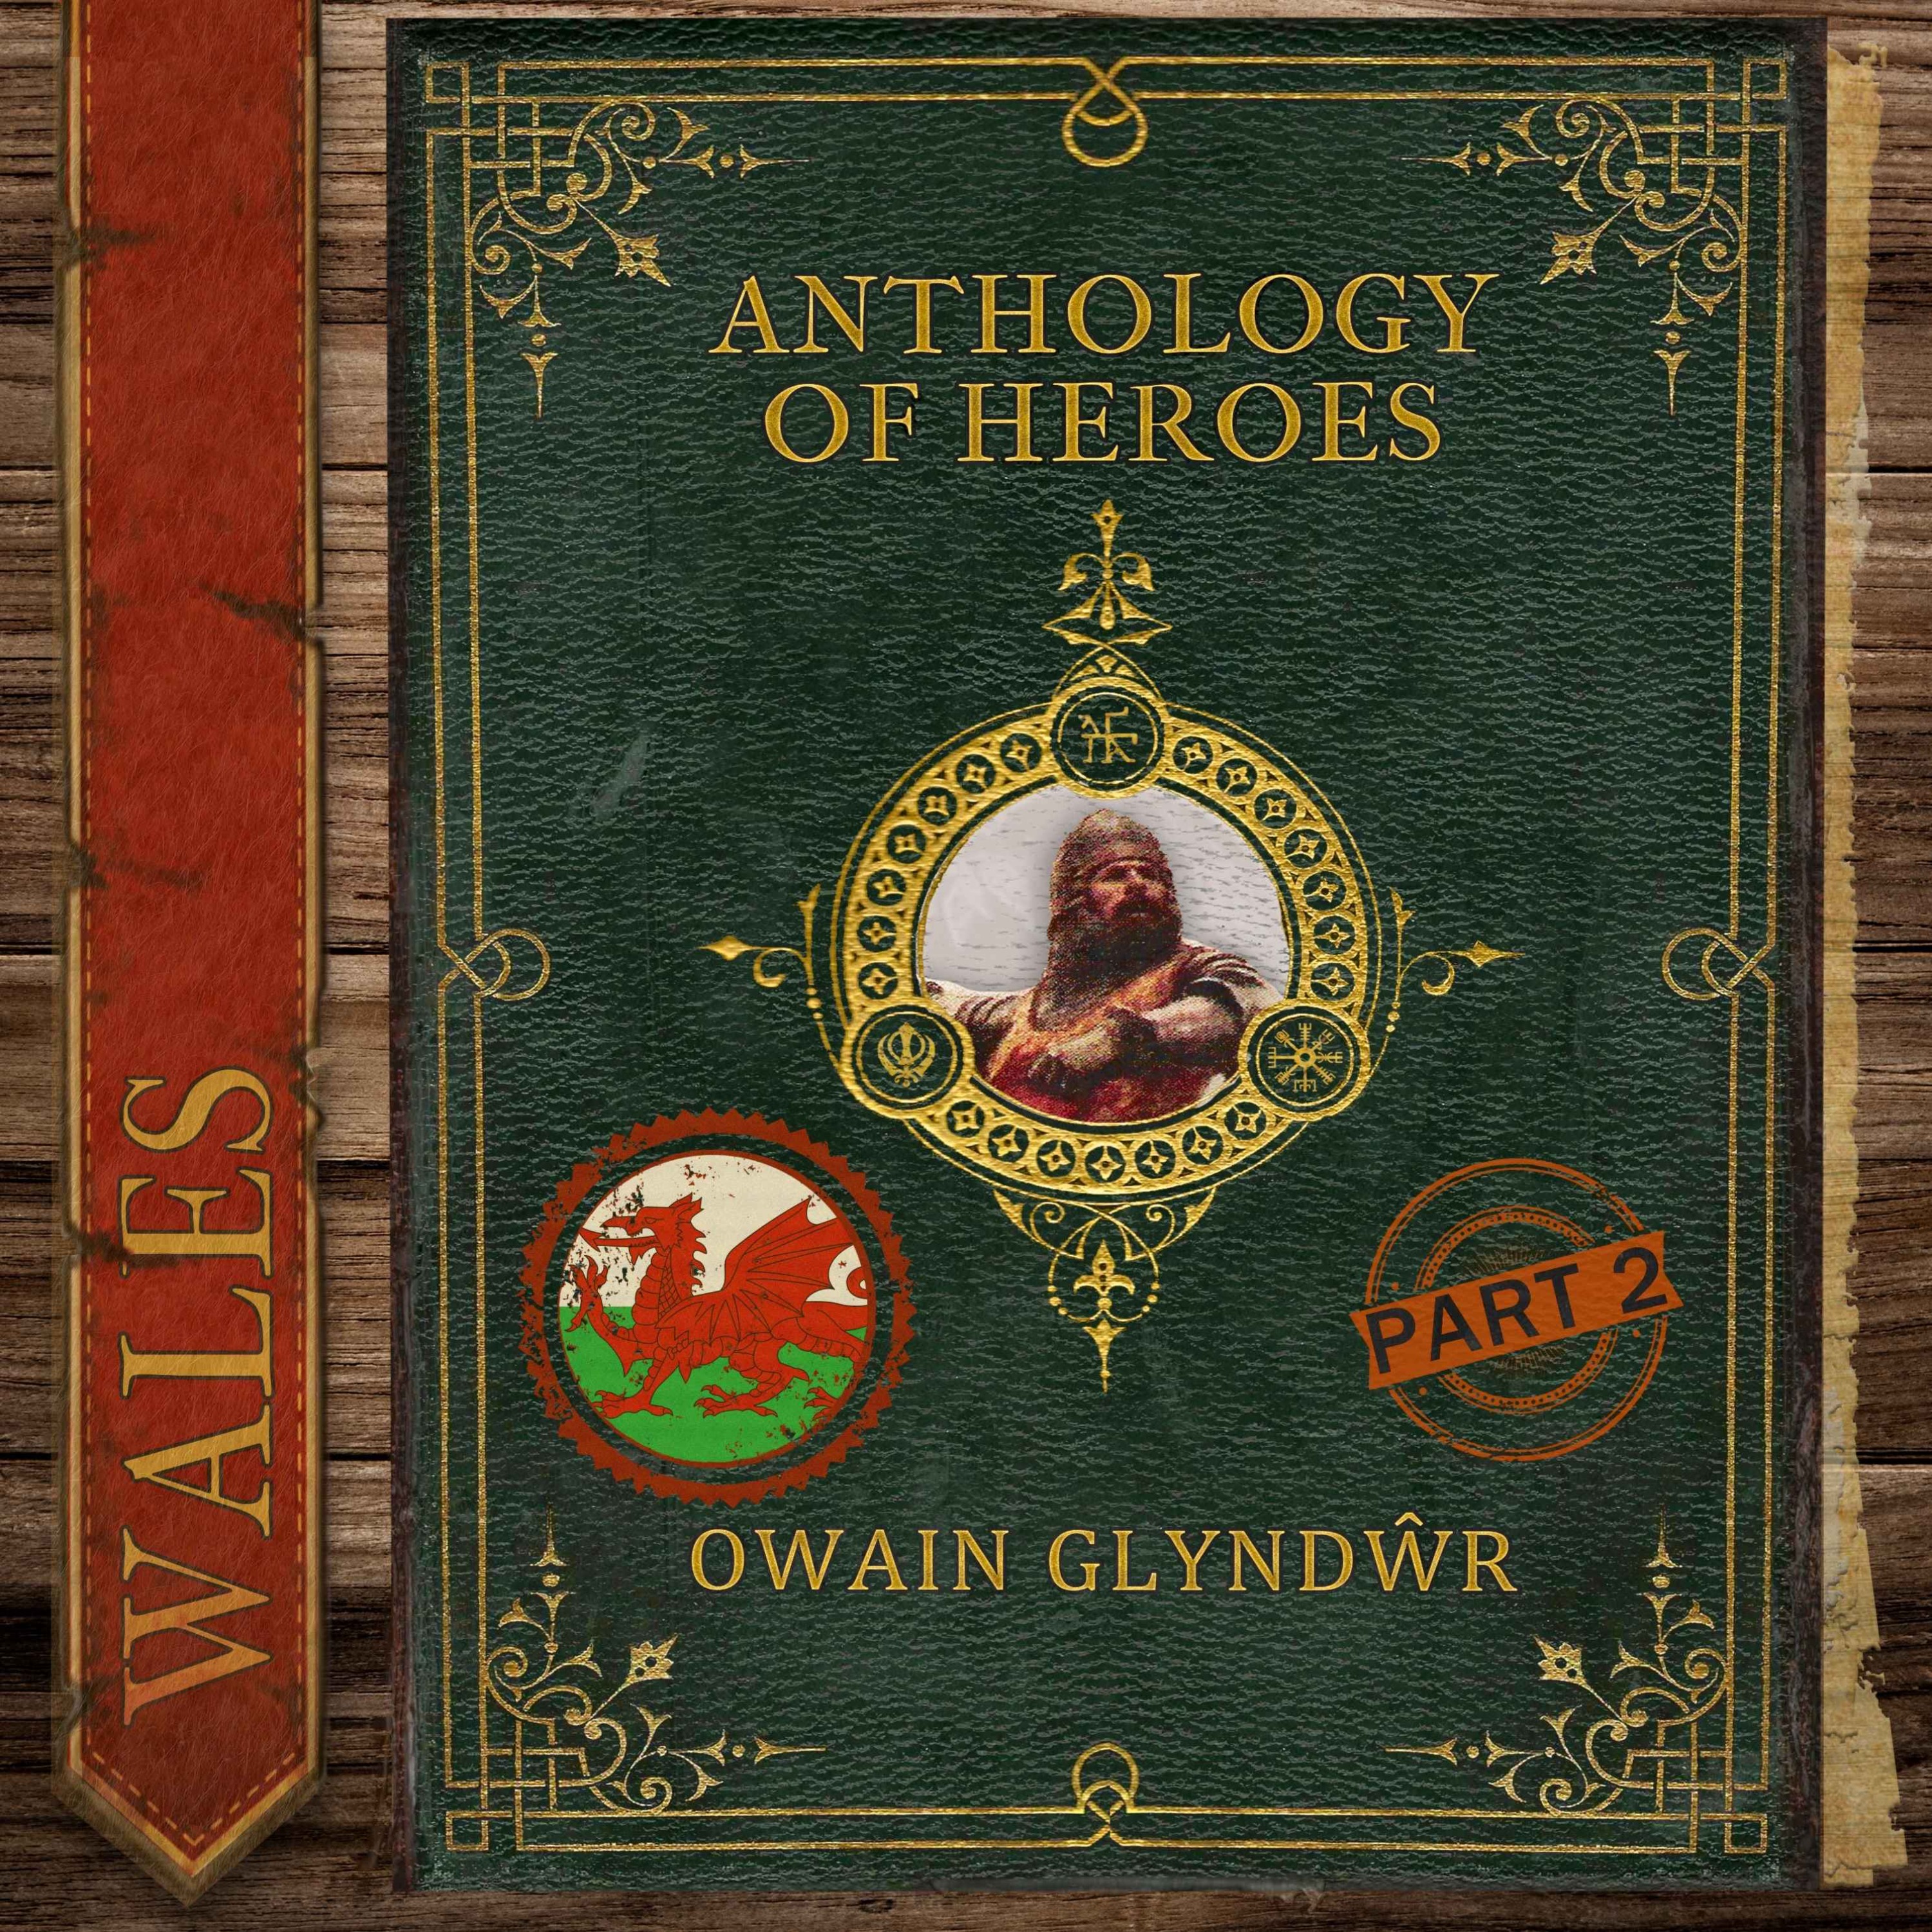 Owain Glyndŵr, The Last Prince of Wales (Part 2) Image